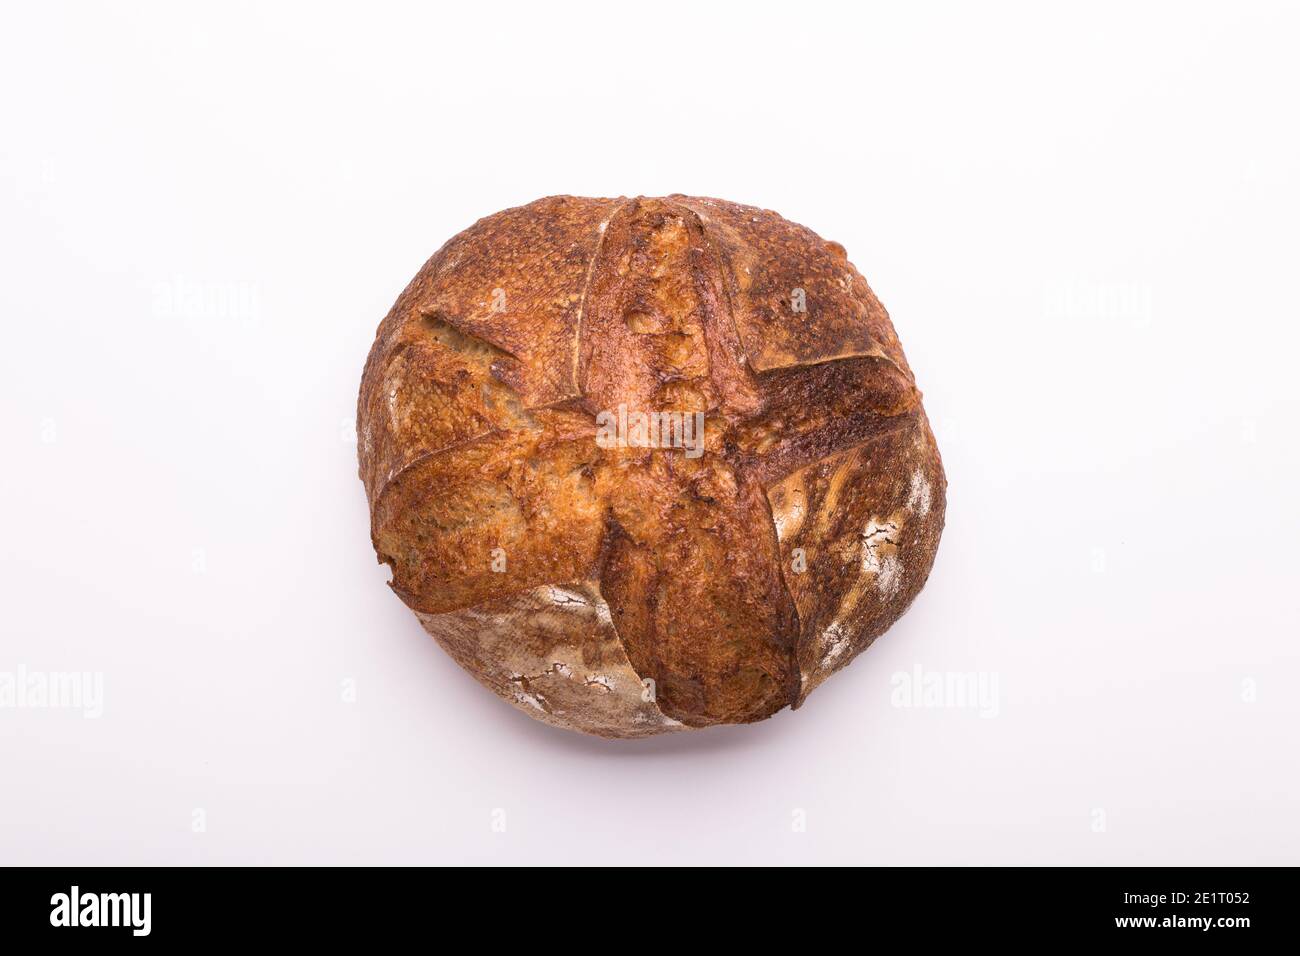 Pain rond de pain de levain fraîchement préparé sur fond blanc Banque D'Images